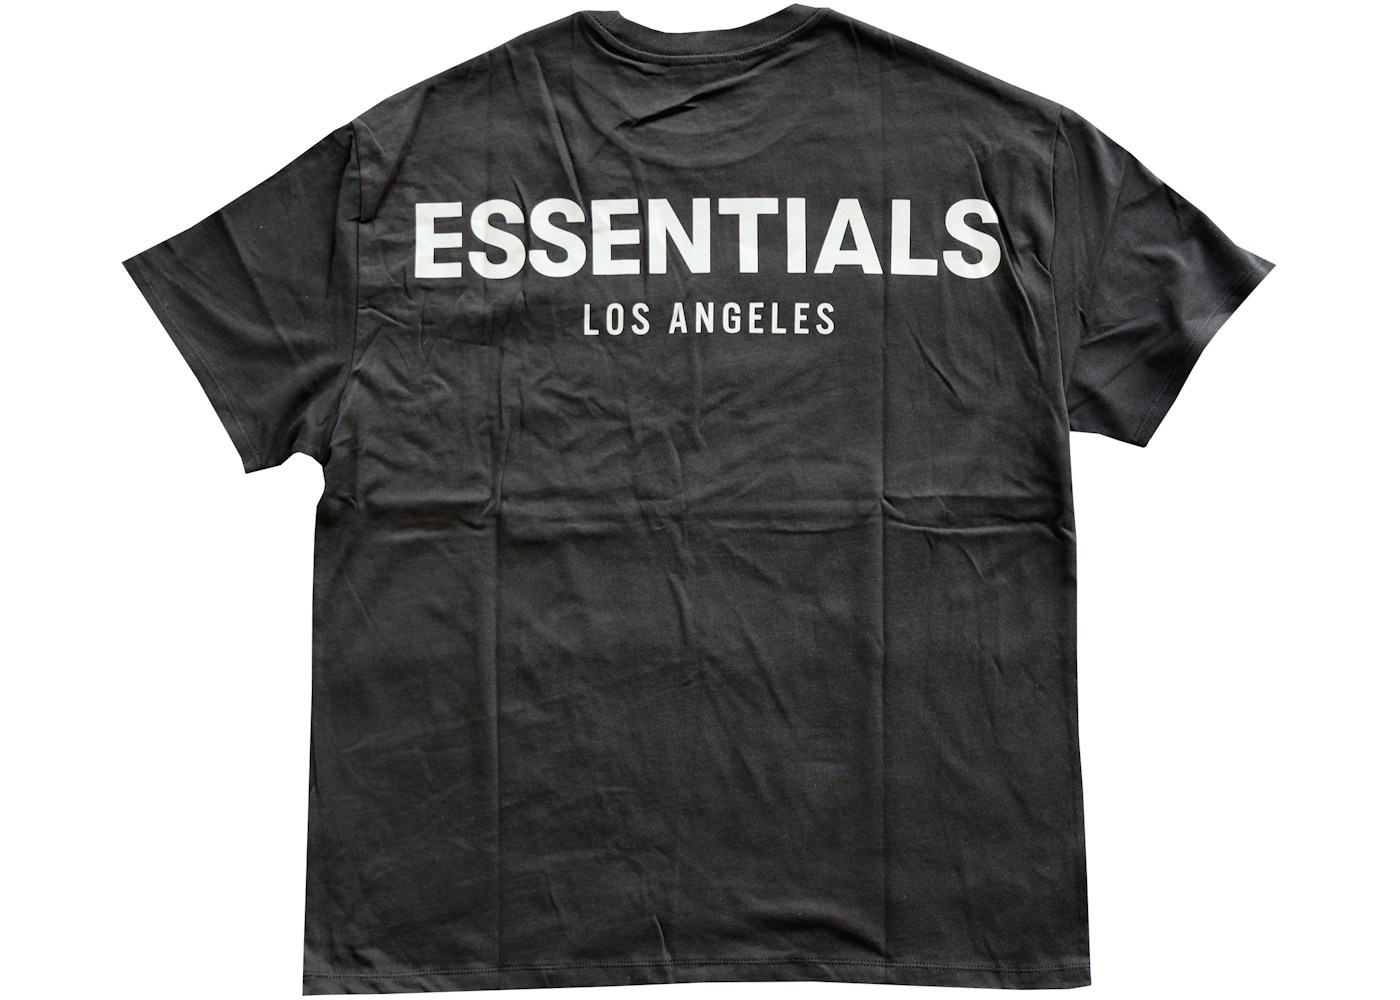 FEAR OF GOD ESSENTIALS Los Angeles 3M Boxy T-Shirt Black - FW19